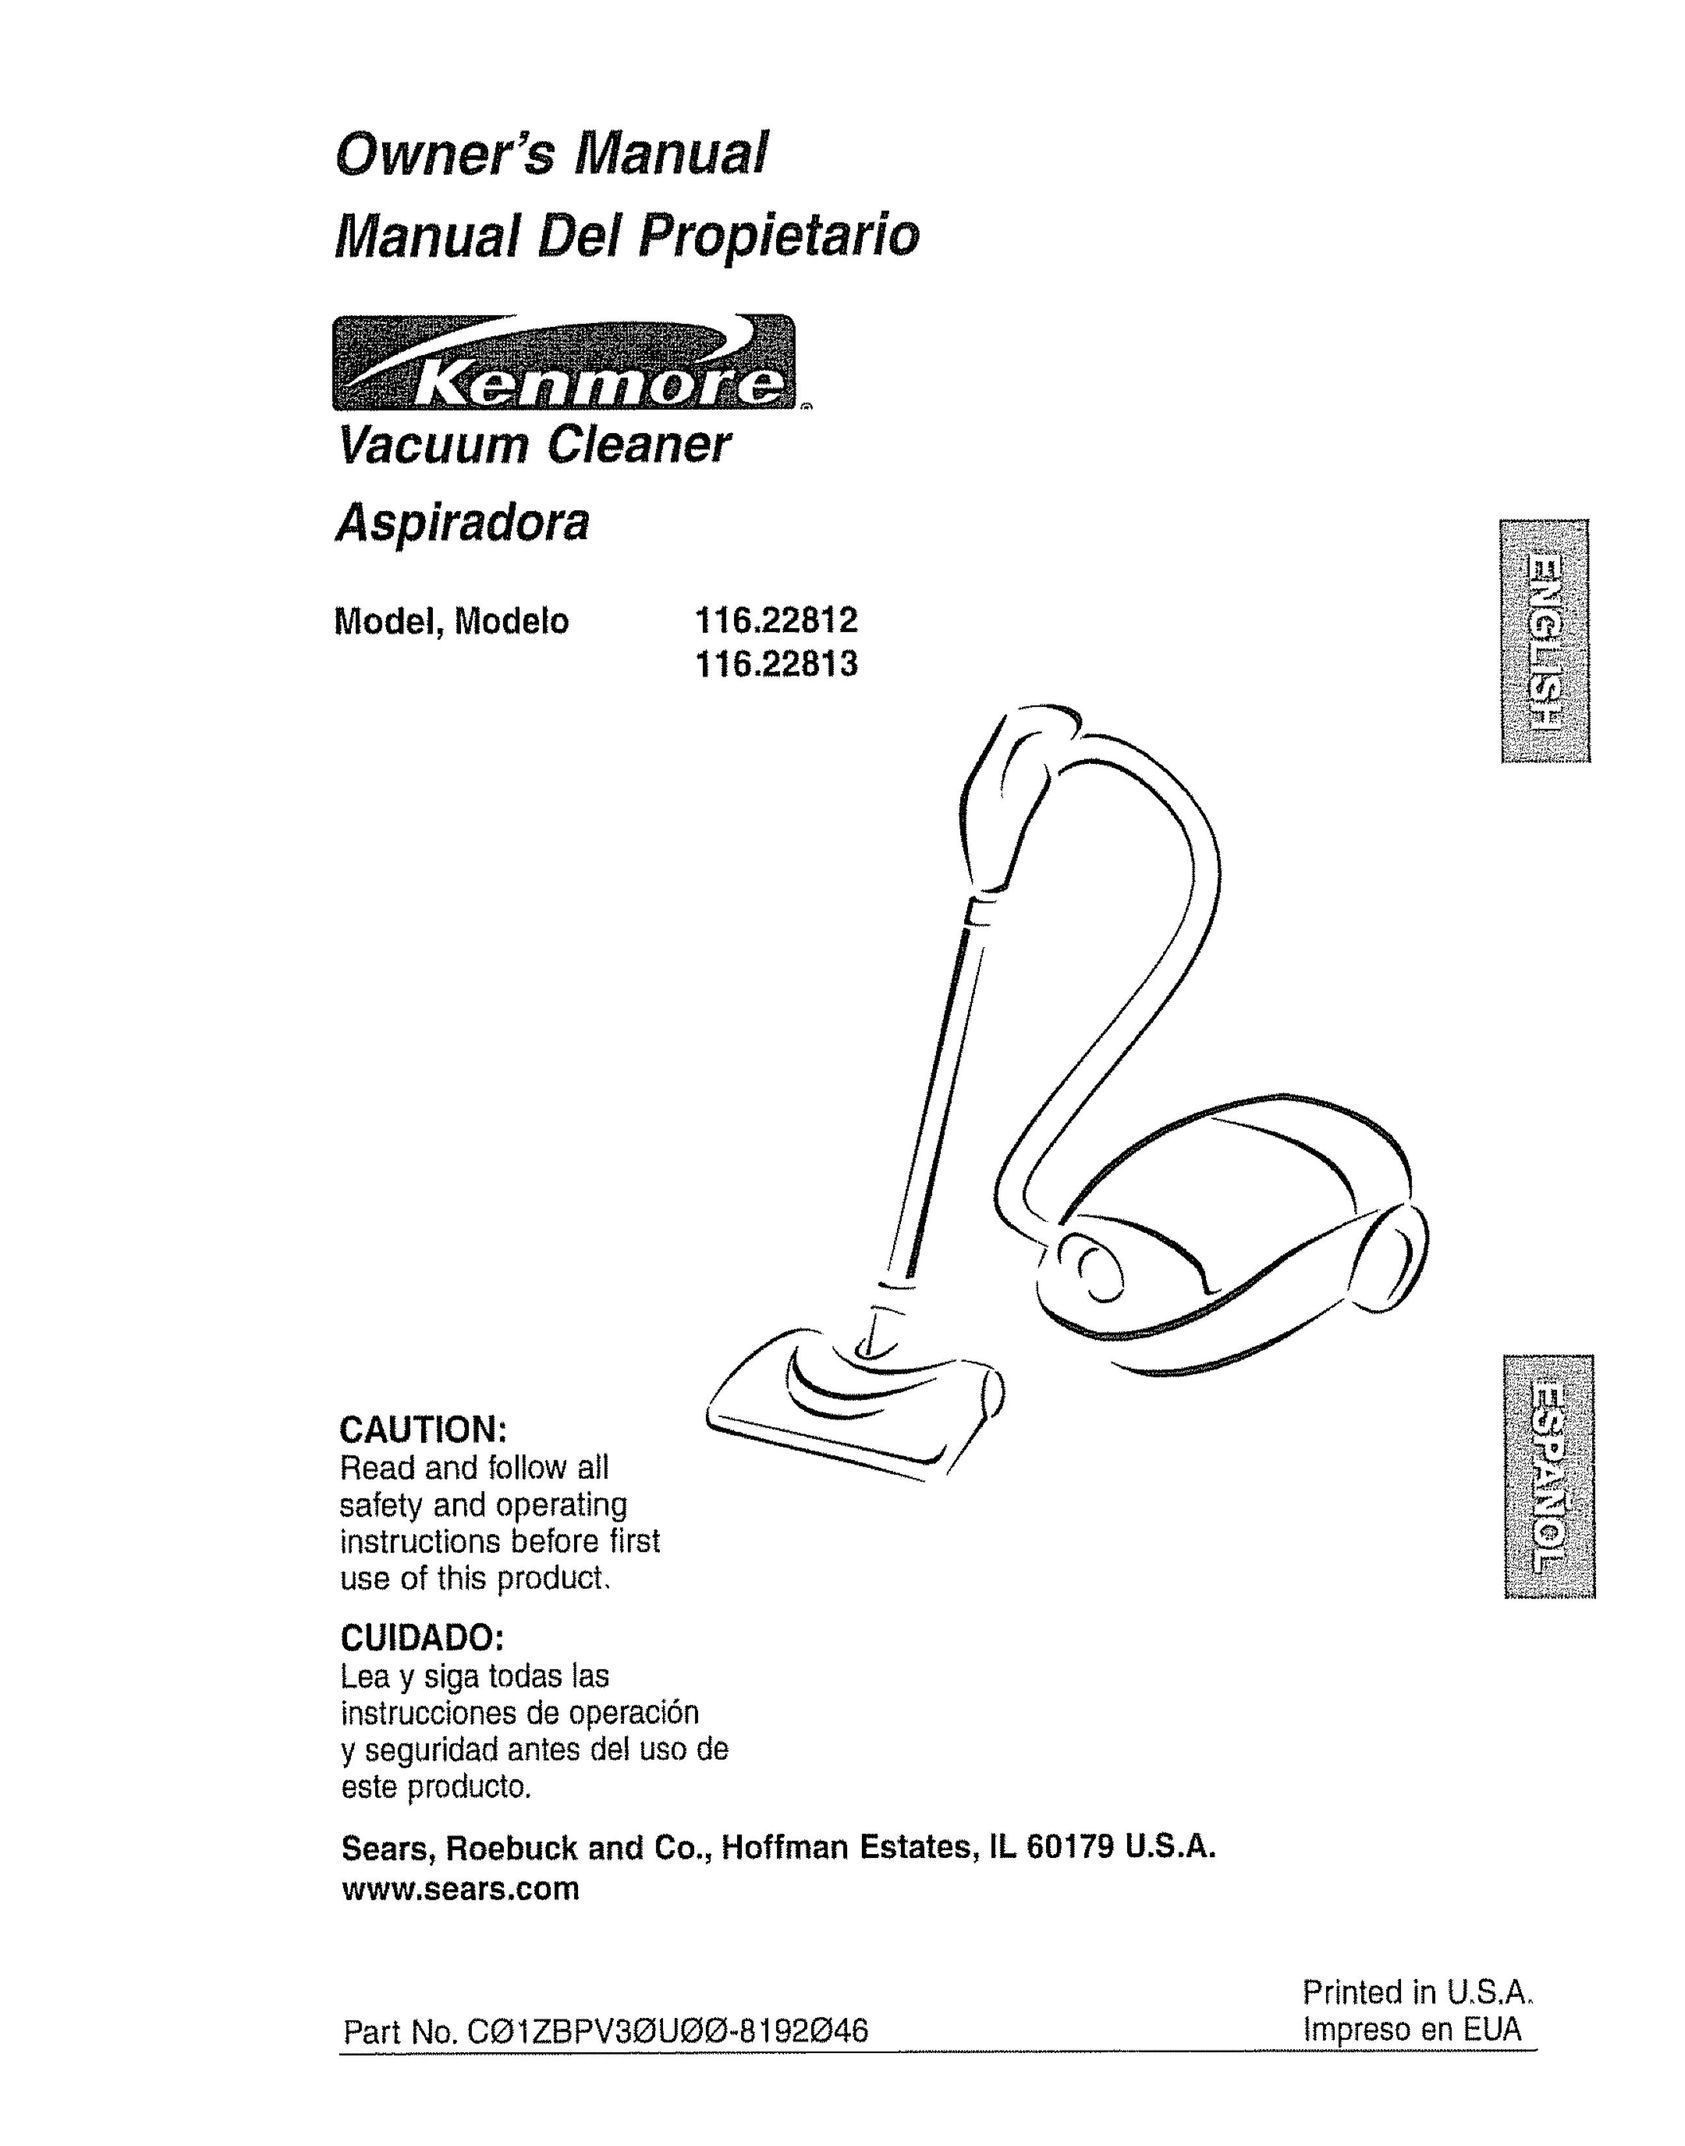 Kenmore 116.22813 Vacuum Cleaner User Manual